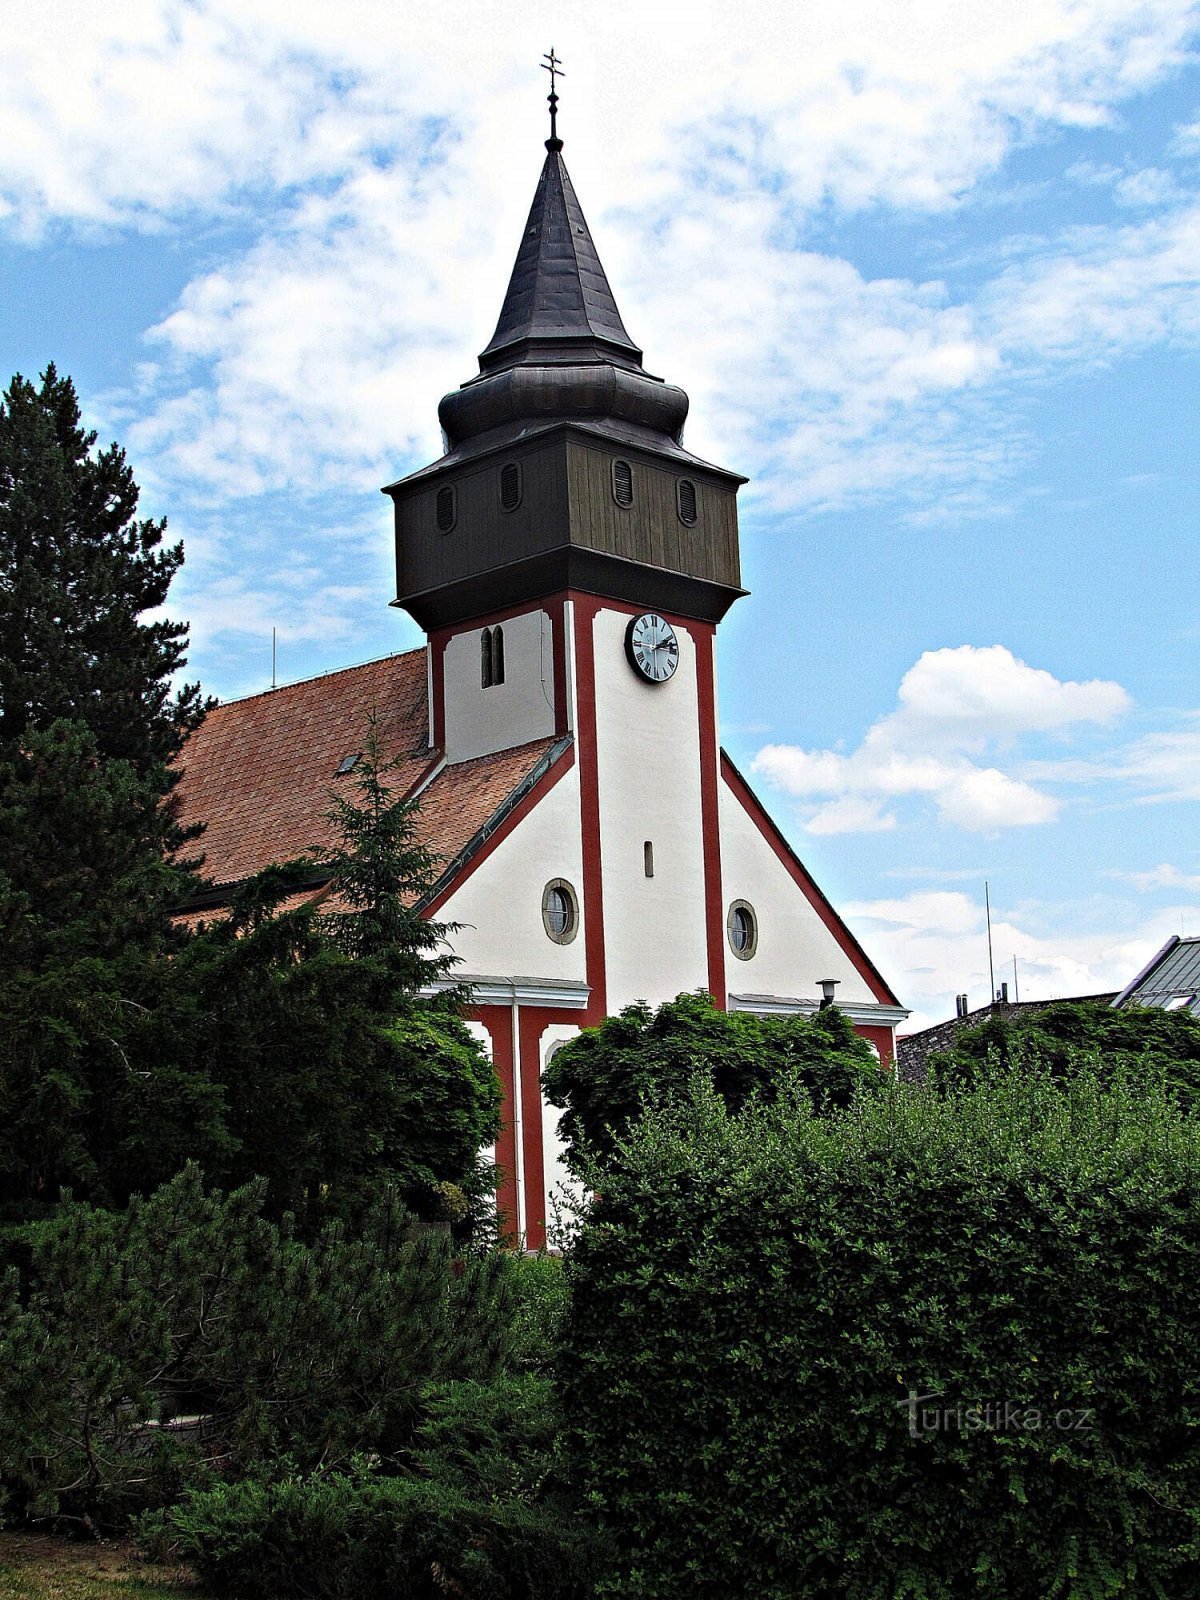 St.-Wenzels-Kirche in Světlá nad Sázavou